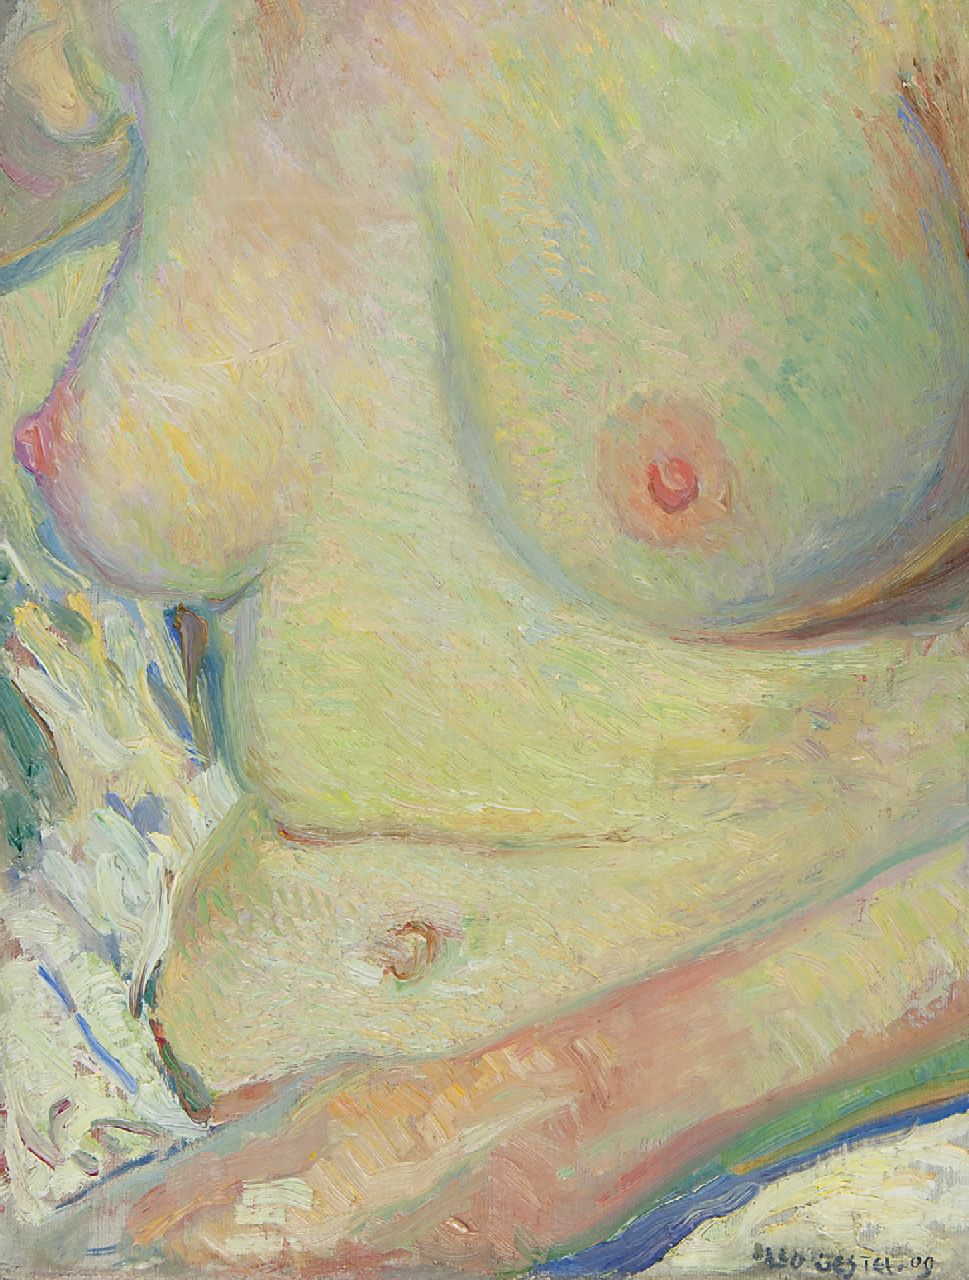 Gestel L.  | Leendert 'Leo' Gestel | Schilderijen te koop aangeboden | Vrouw, zittend in bad, olieverf op doek 33,5 x 25,6 cm, gesigneerd rechtsonder en gedateerd '09